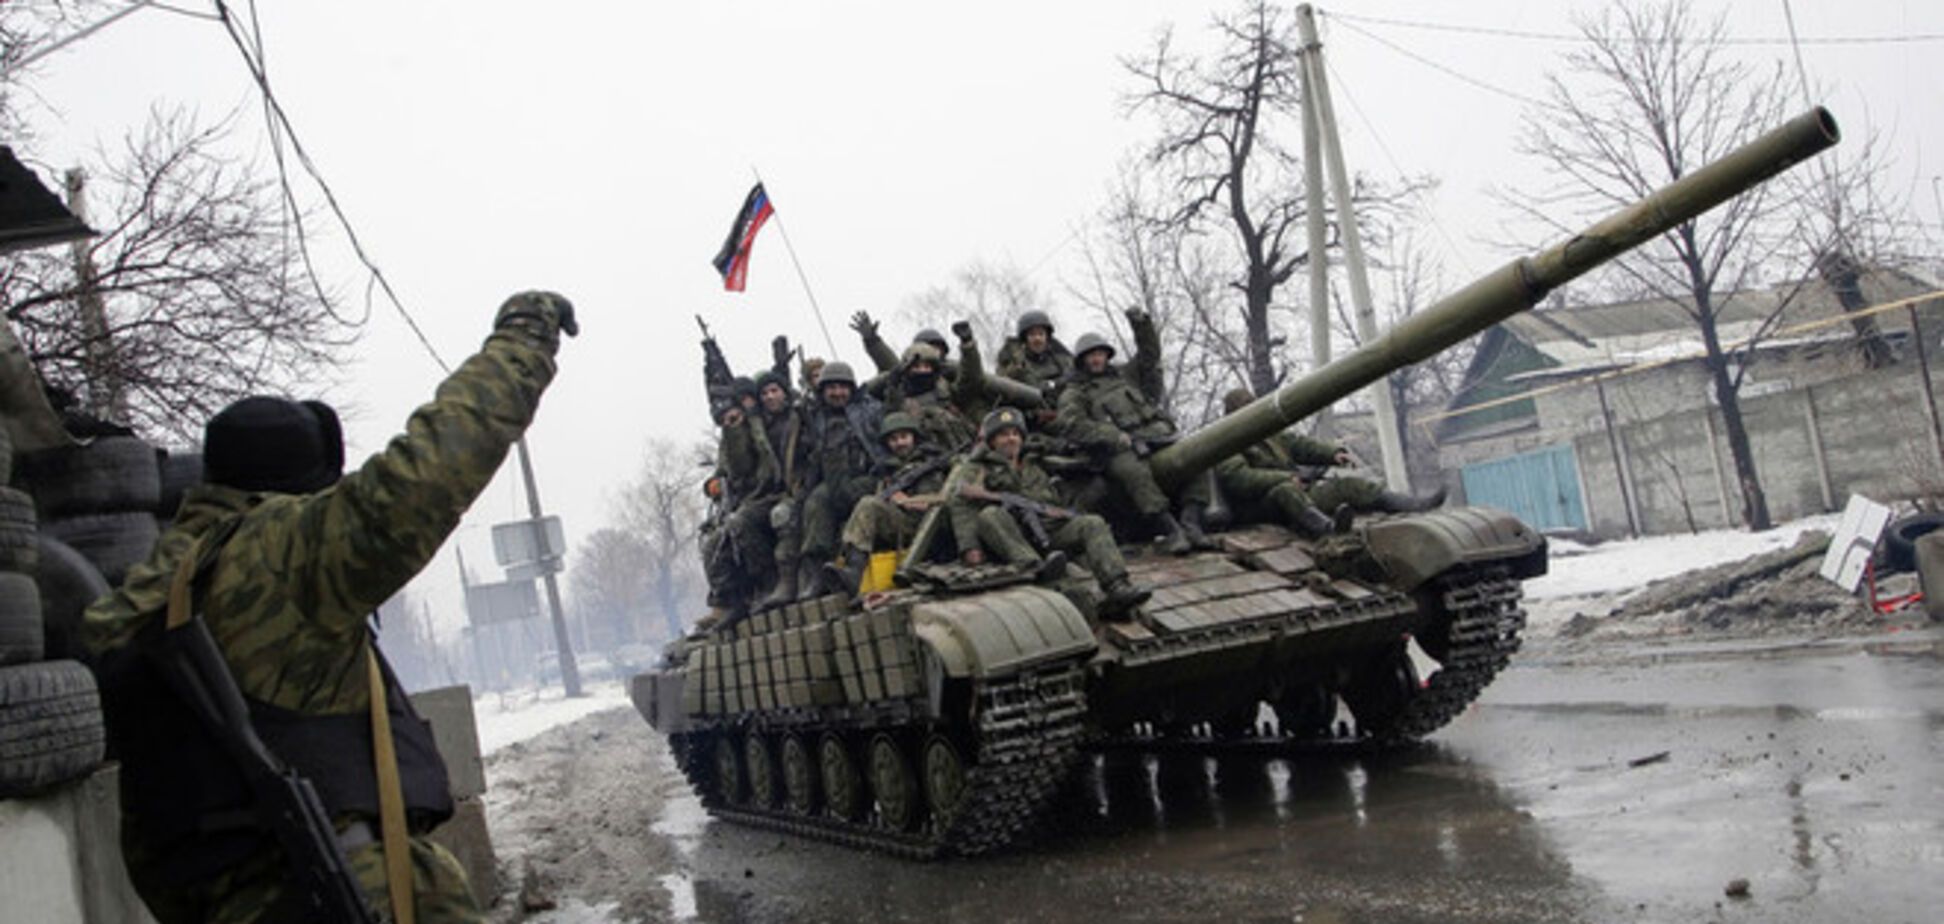 ОБСЕ зафиксировала лагерь боевиков и военную технику на окраинах Донецка